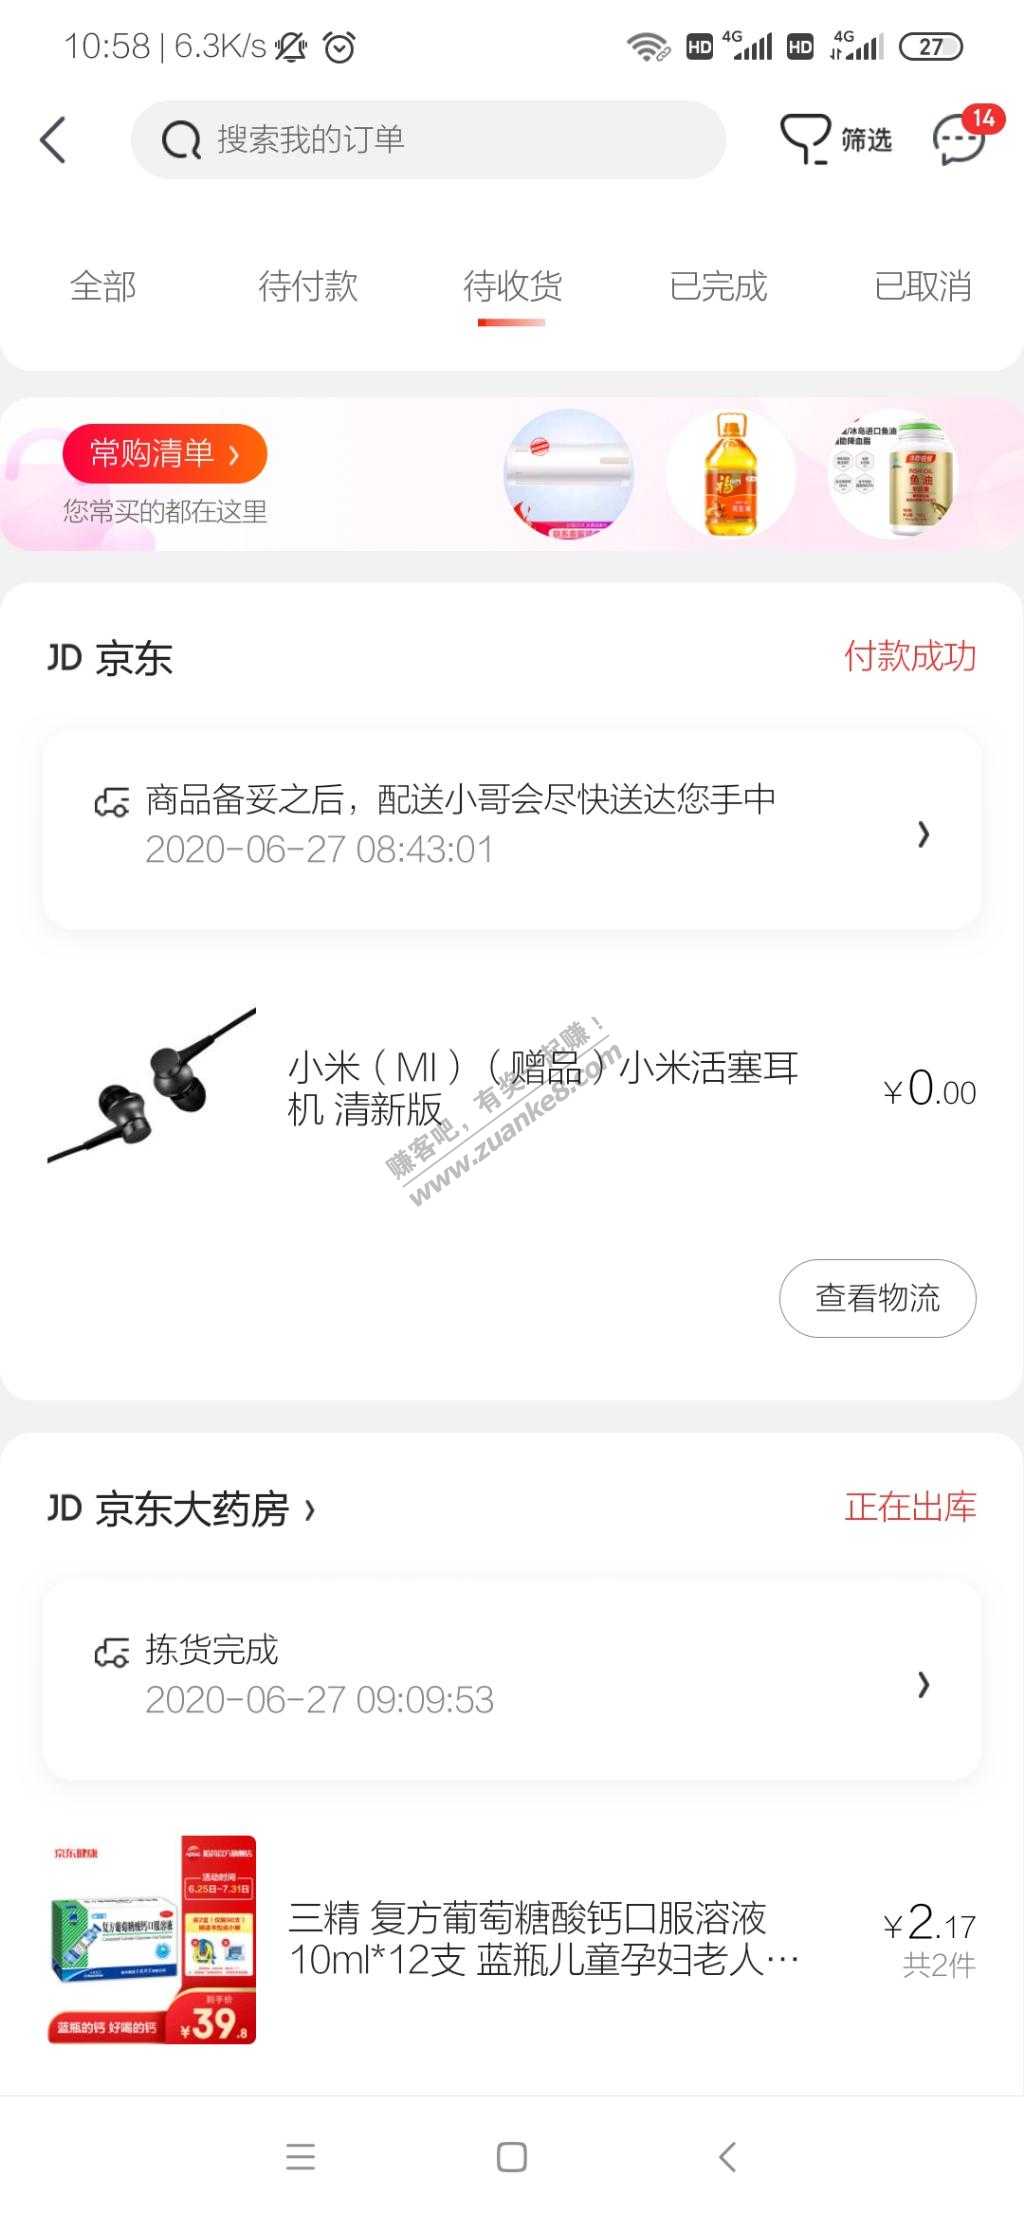 618买K30i 找客服要耳机-惠小助(52huixz.com)